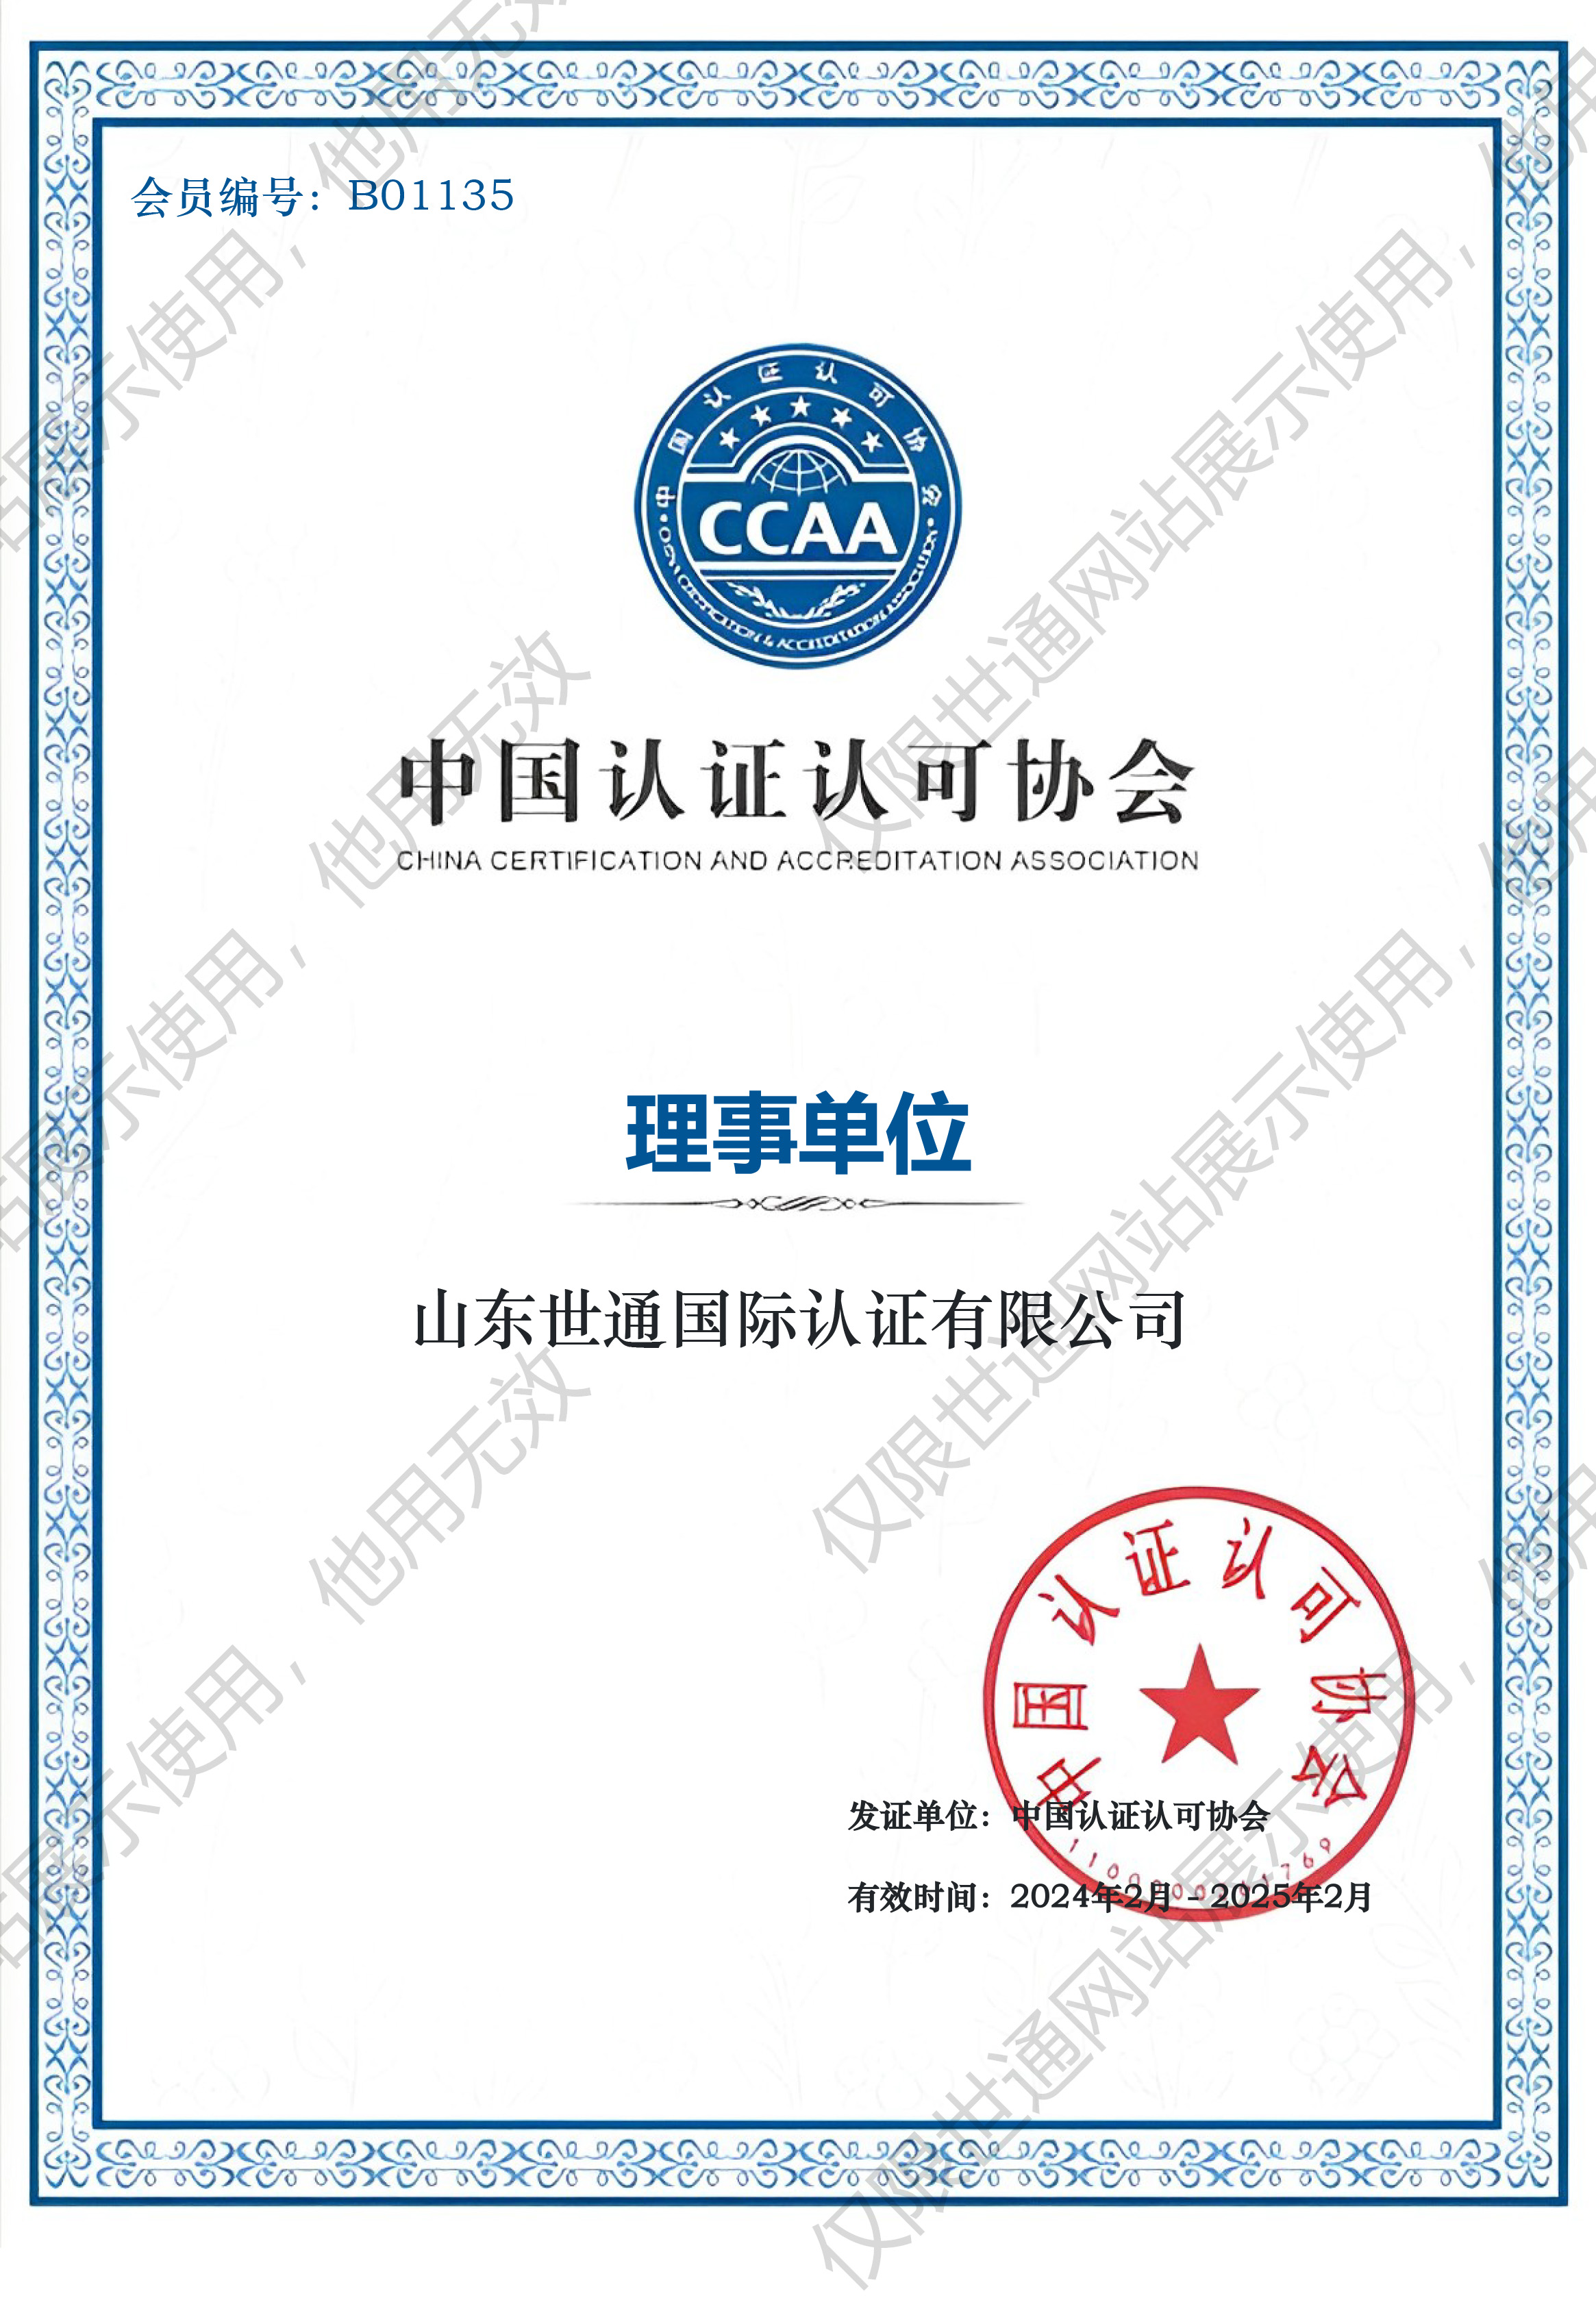 中国认证认可协会 理事单位证书.jpg